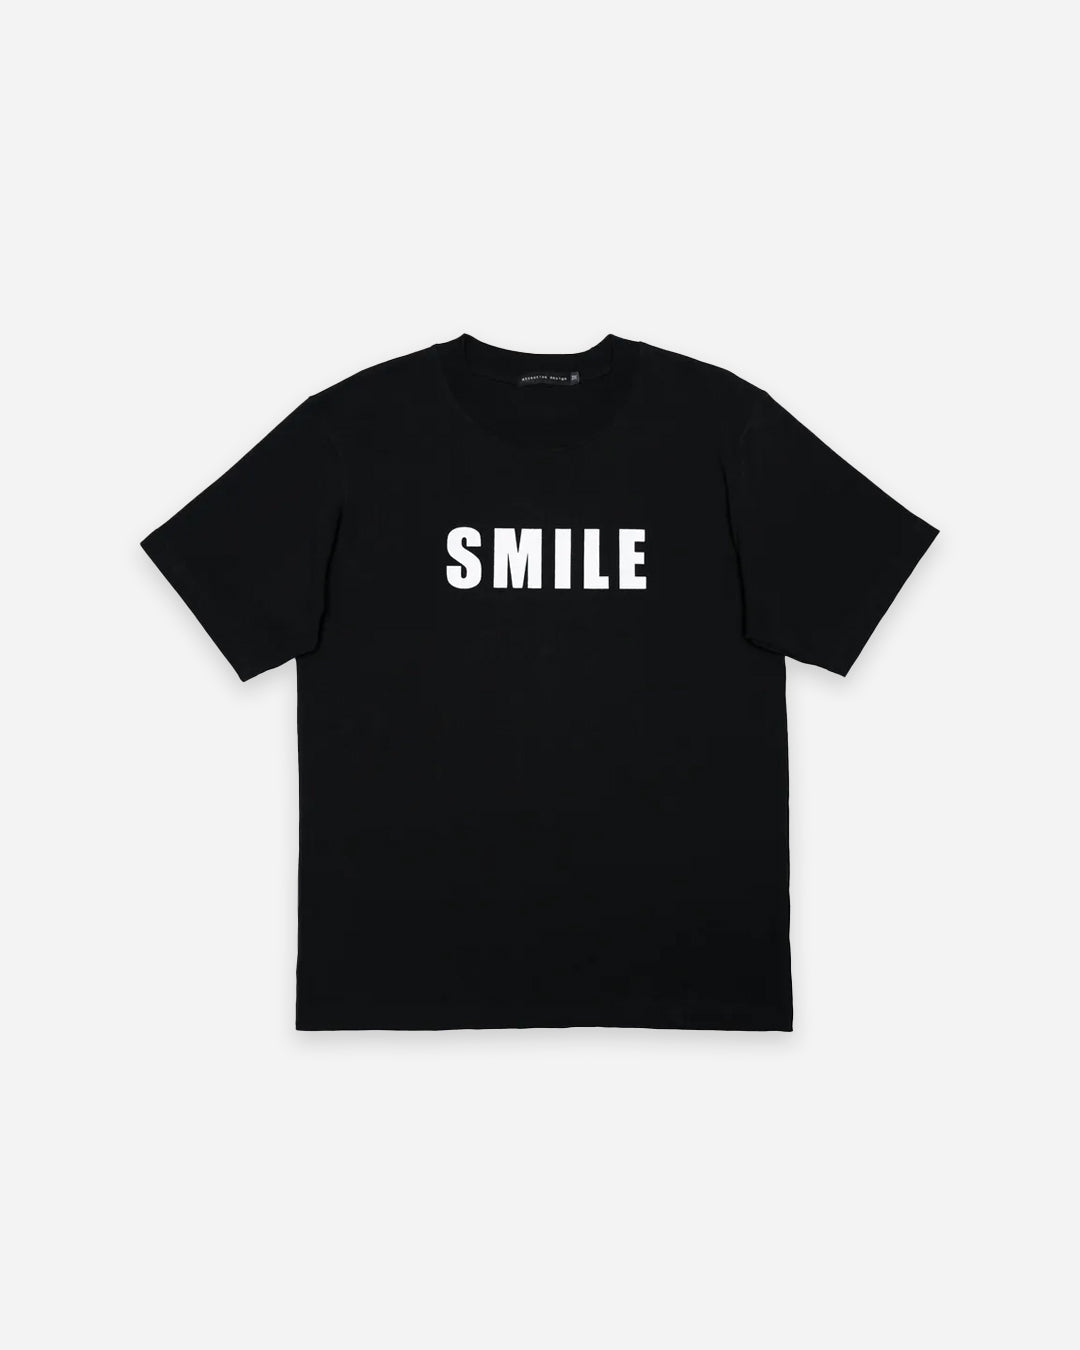 SMILE T-SHIRT BLACK